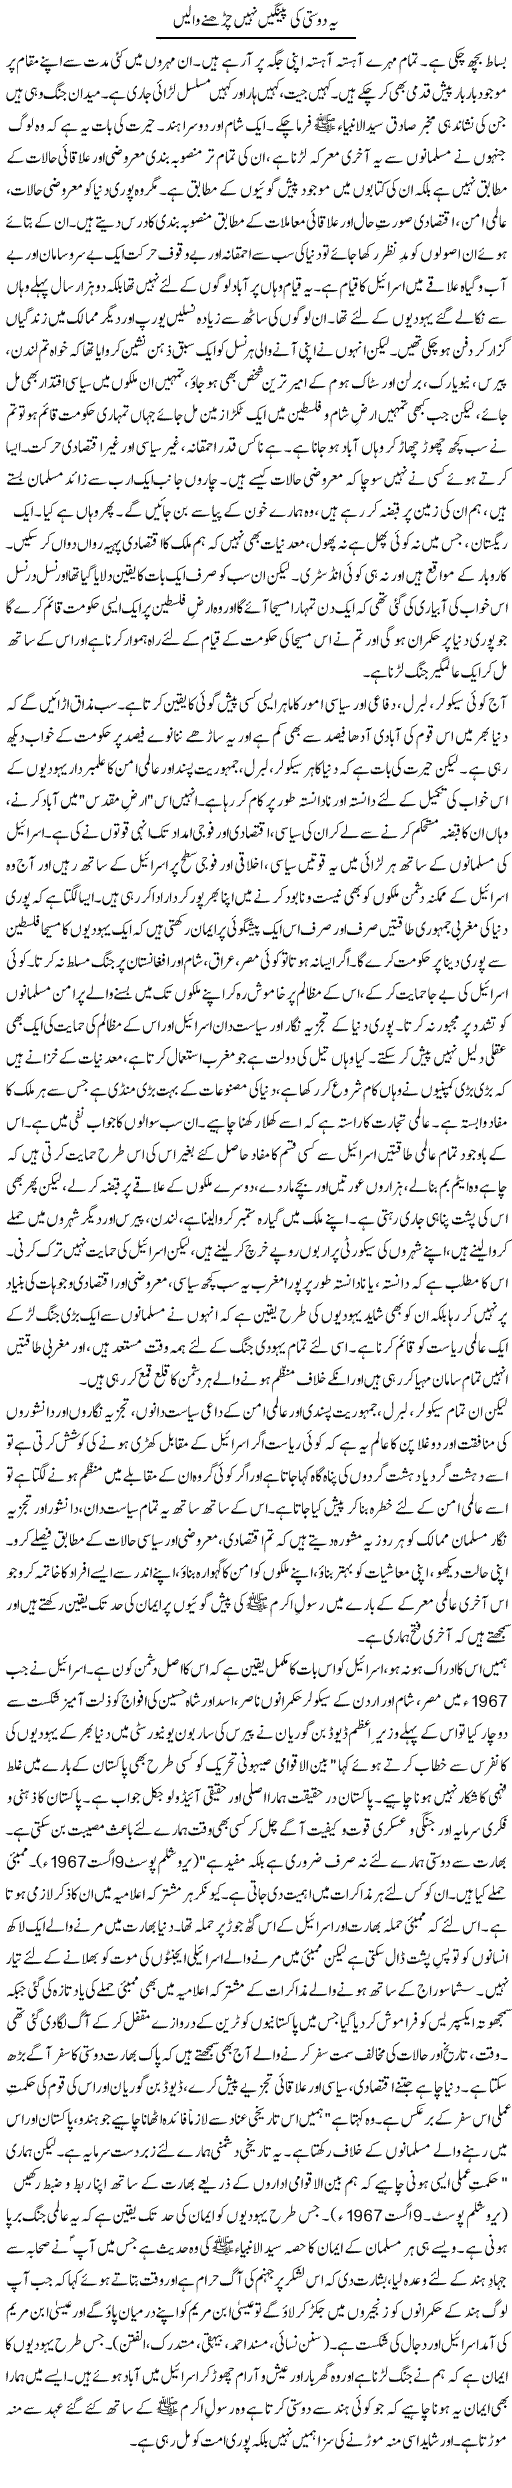 Ye Dosti Ki Peengain Nahi Charhne Wali | Orya Maqbool Jan | Daily Urdu Columns